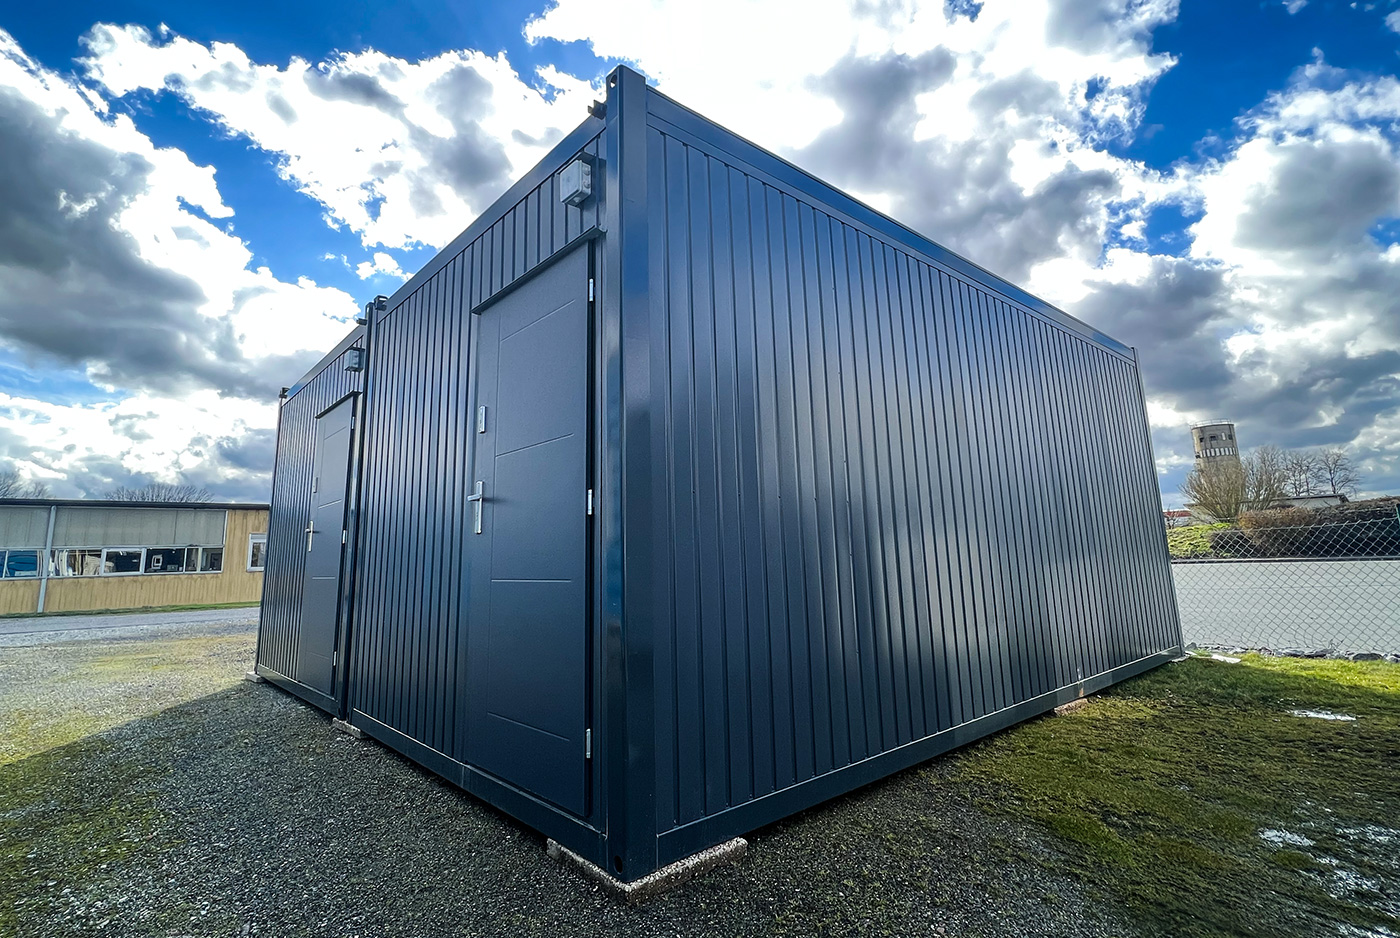 Der Wohncontainer W4 wird aus hochwertigen und widerstandsfähigen Materialien gefertigt